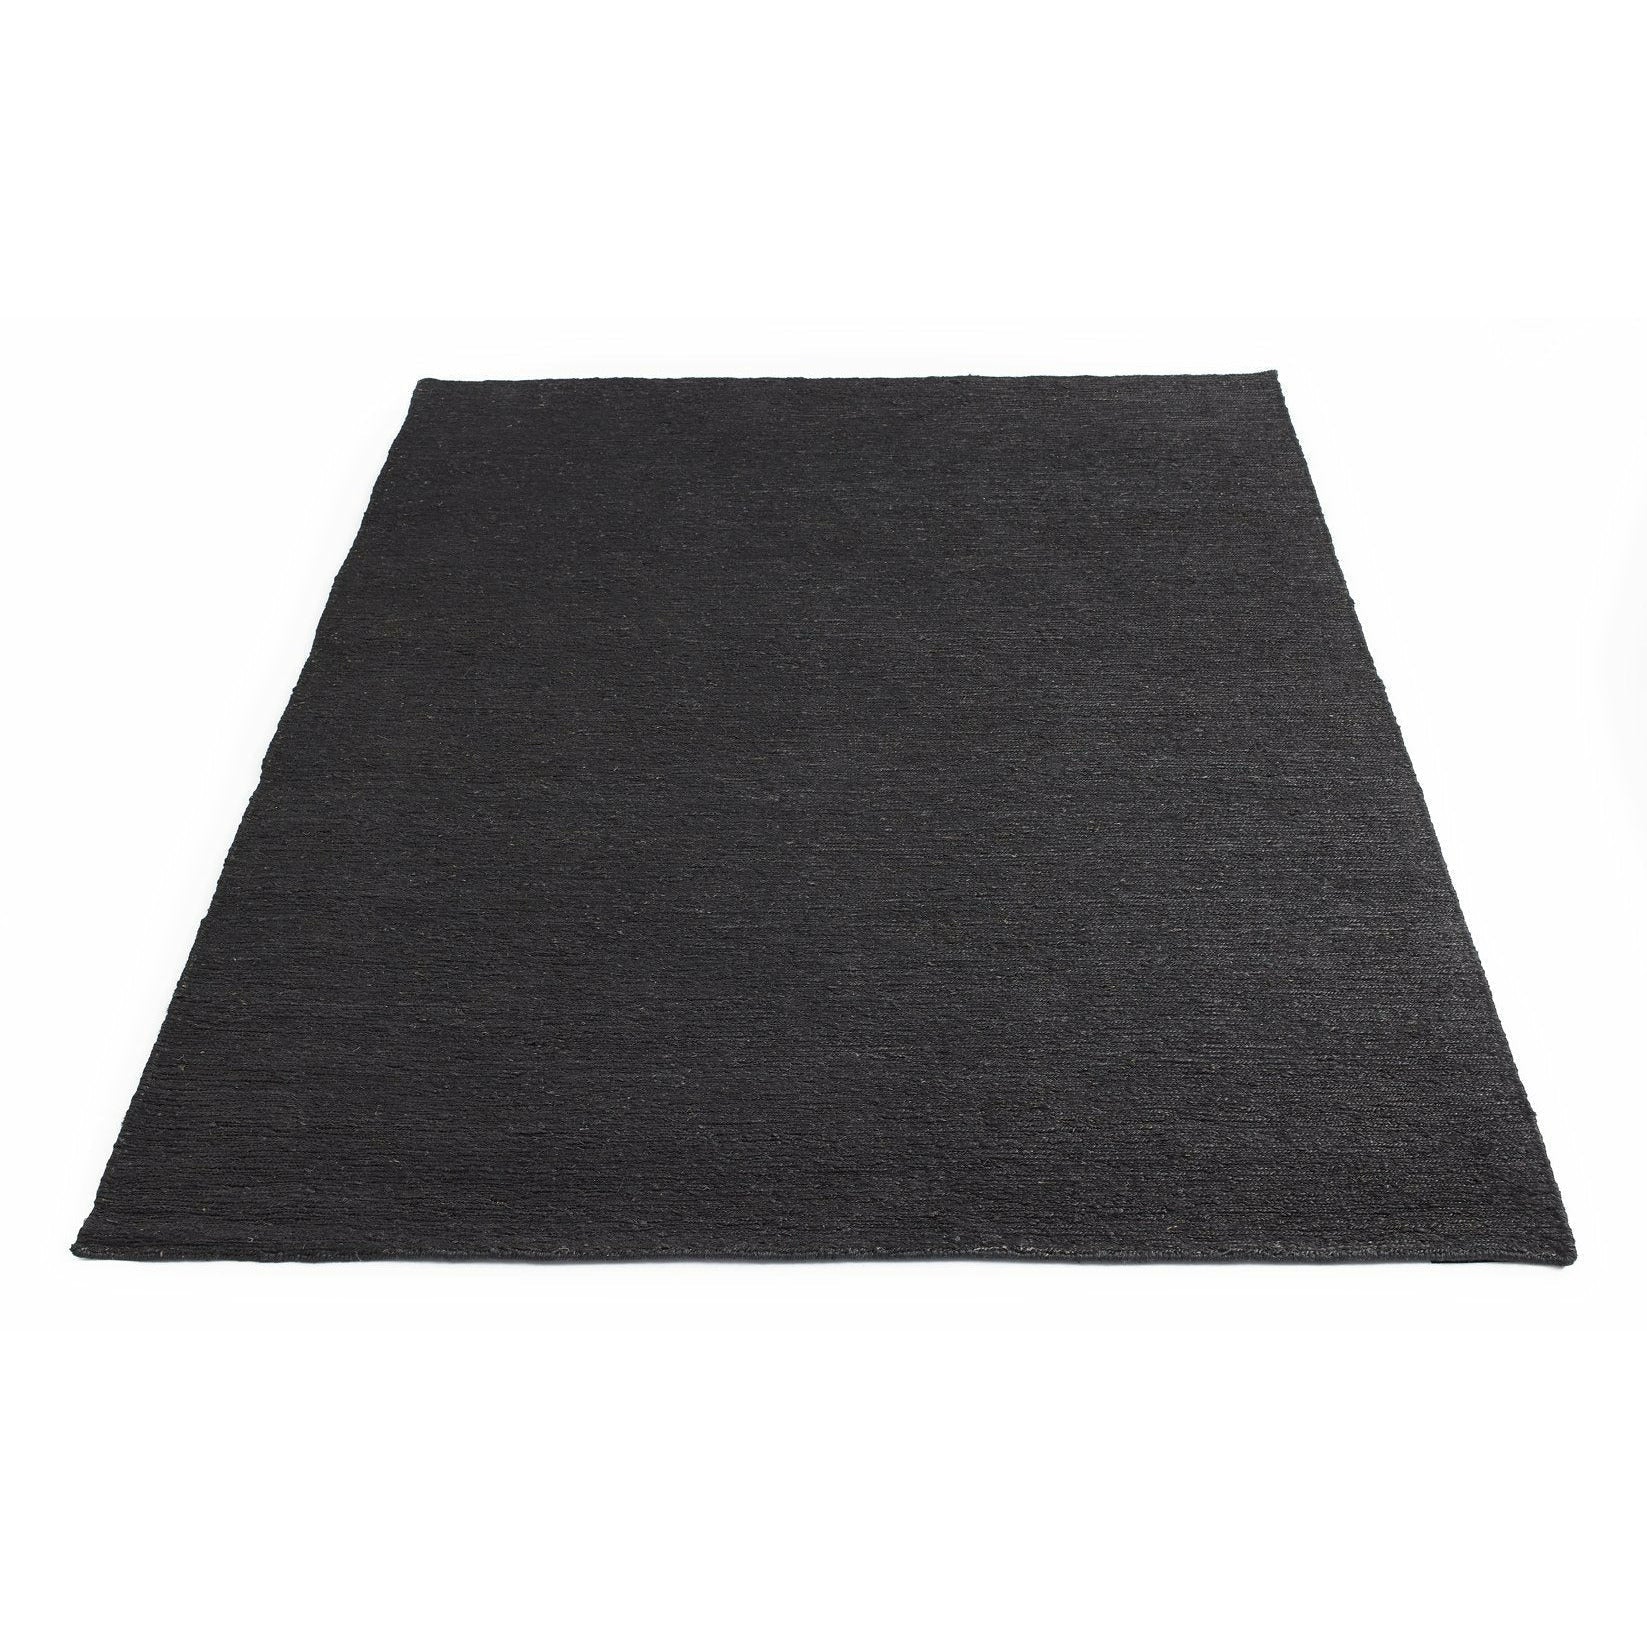 Massimo Suma -vloerkleed zwart, 200x300 cm